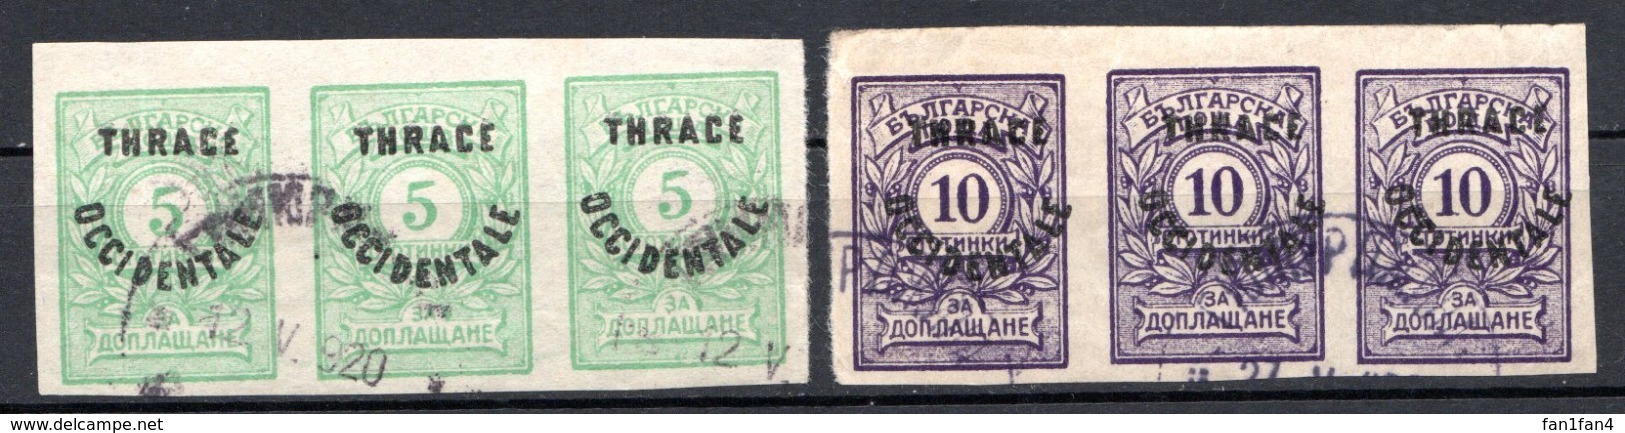 THRACE - (Occupation Interalliée) - 1920 - Taxe - Bandes De 3 Ex. Des N° 4 à 7 - (Lot De 4 Valeurs Différentes) - Used Stamps